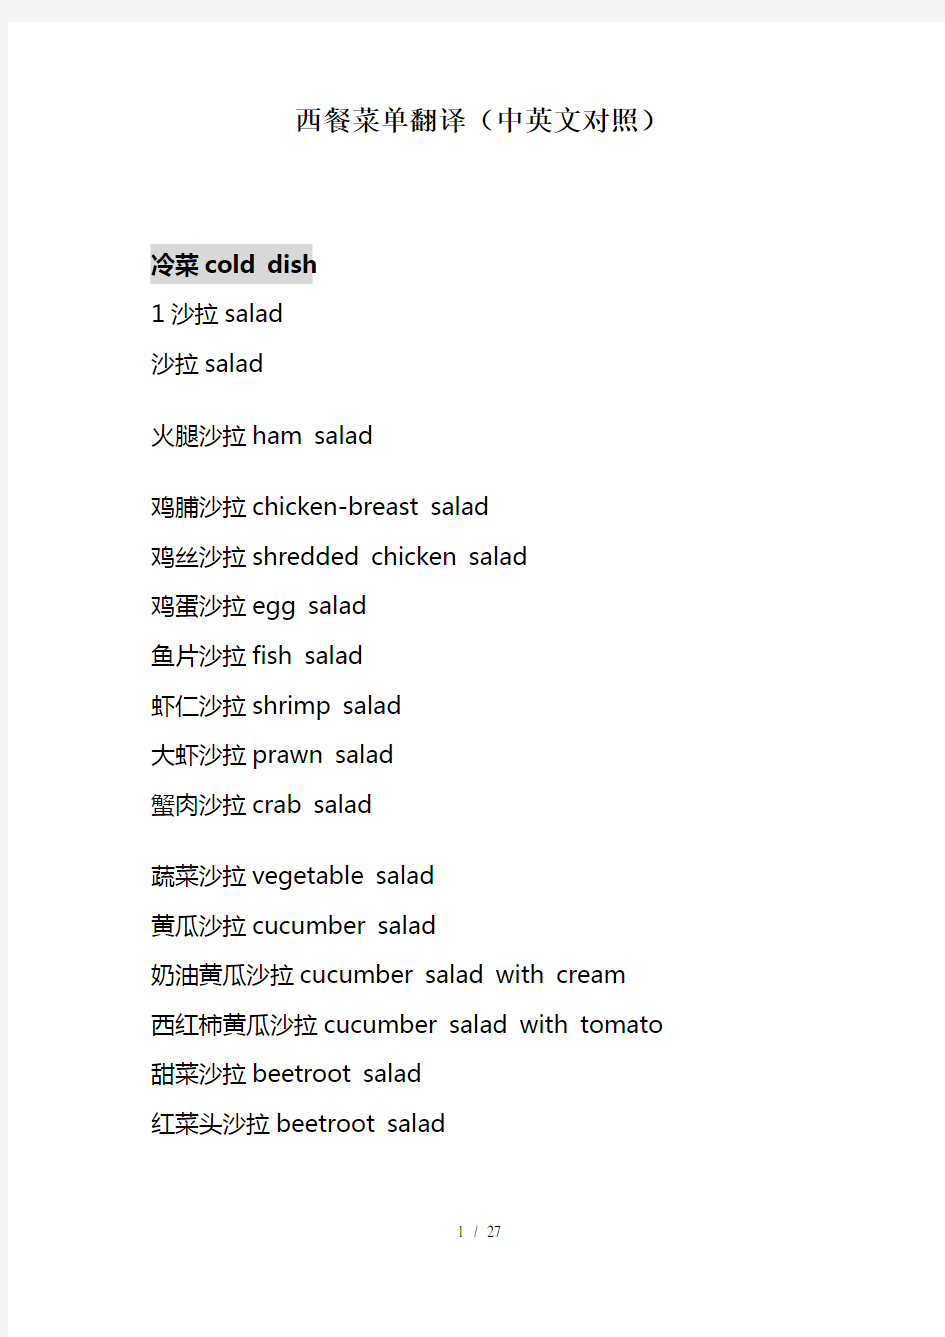 西餐菜单翻译(中英文对照)